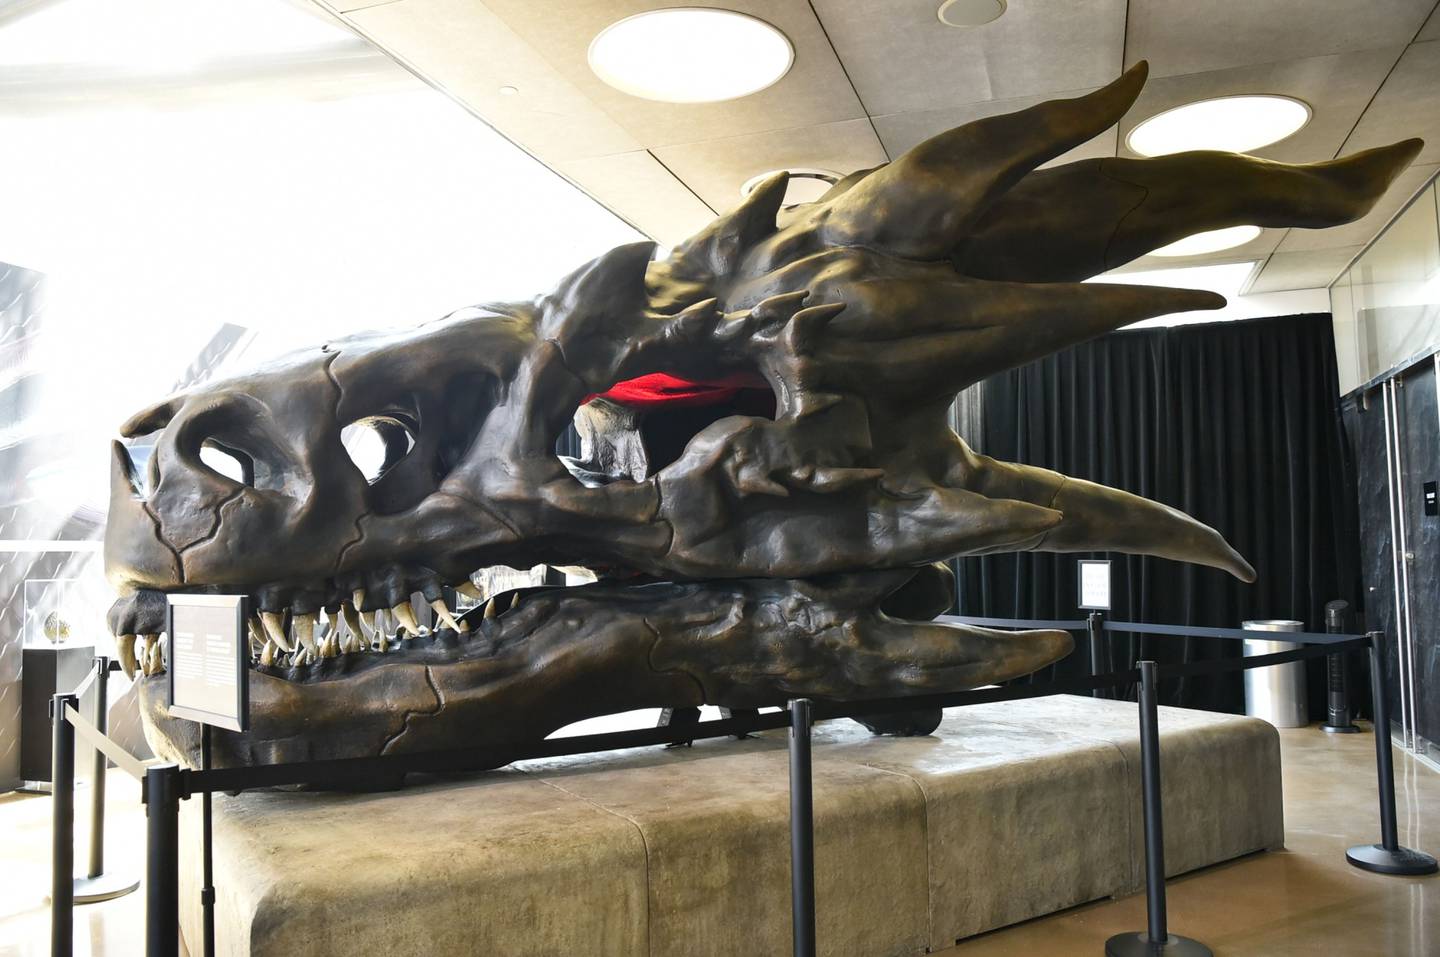 El cráneo de dragón de Balerion The Black Dread, perteneciente al universo de Game of Thrones, se aprecia en la exhibición en el Museo Nacional de Historia en Los Ángeles, California.